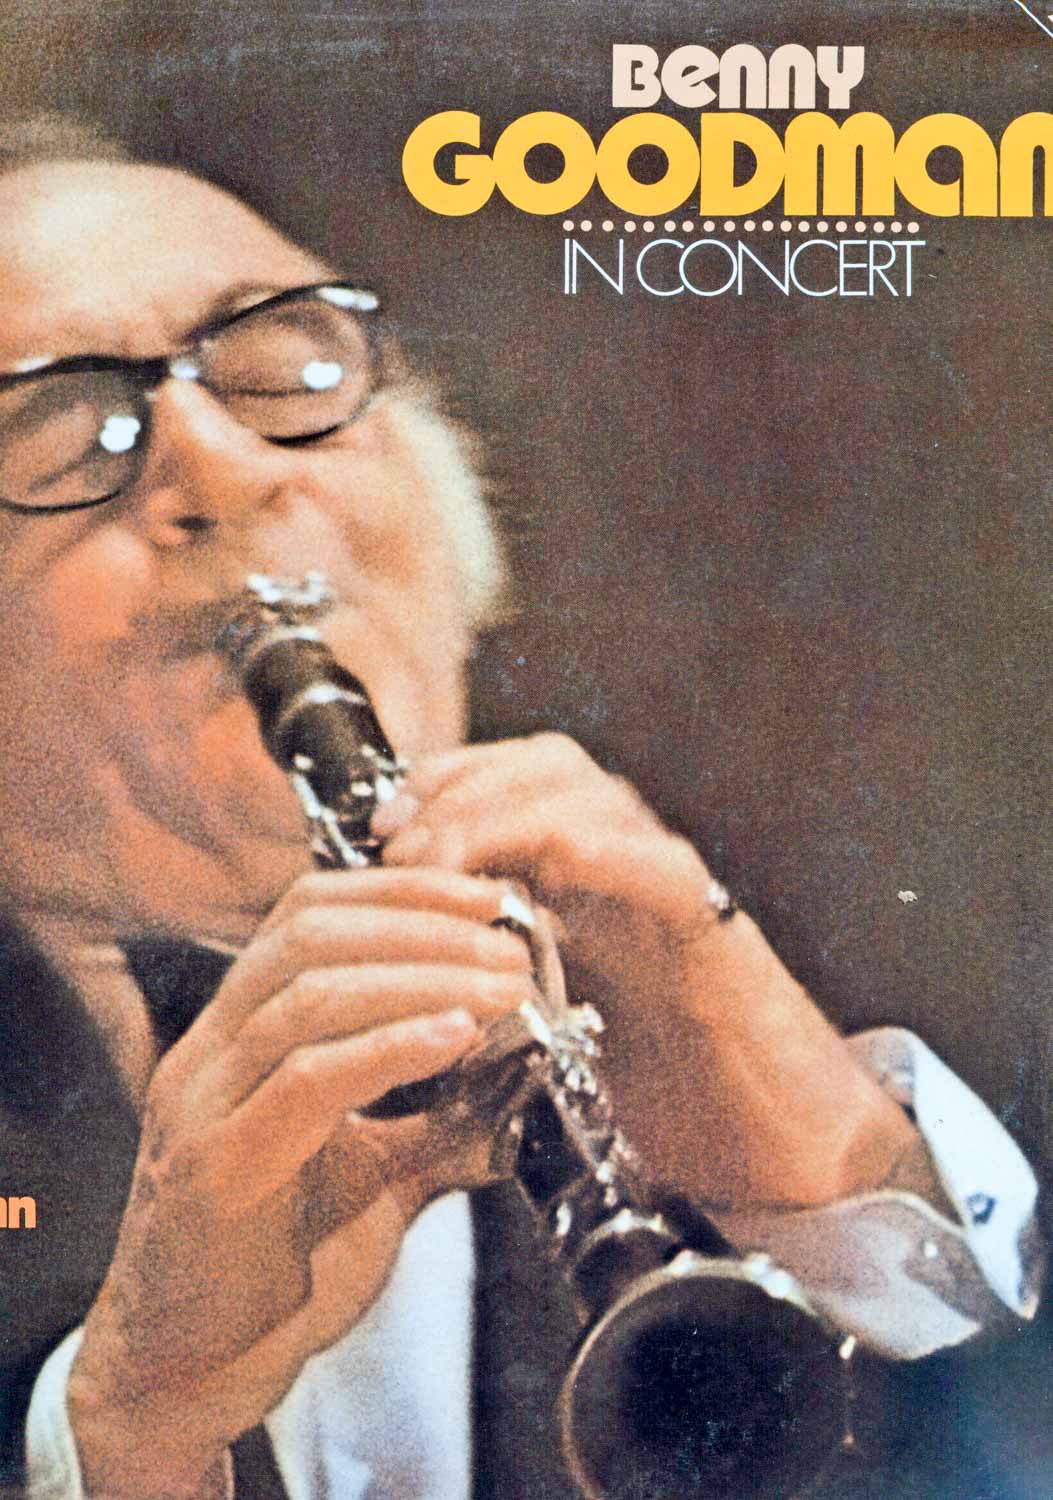 Benny Goodman  Benny Goodman in Concert (Doppel-LP) (6.28121)  *LP 12'' (Vinyl)*. 